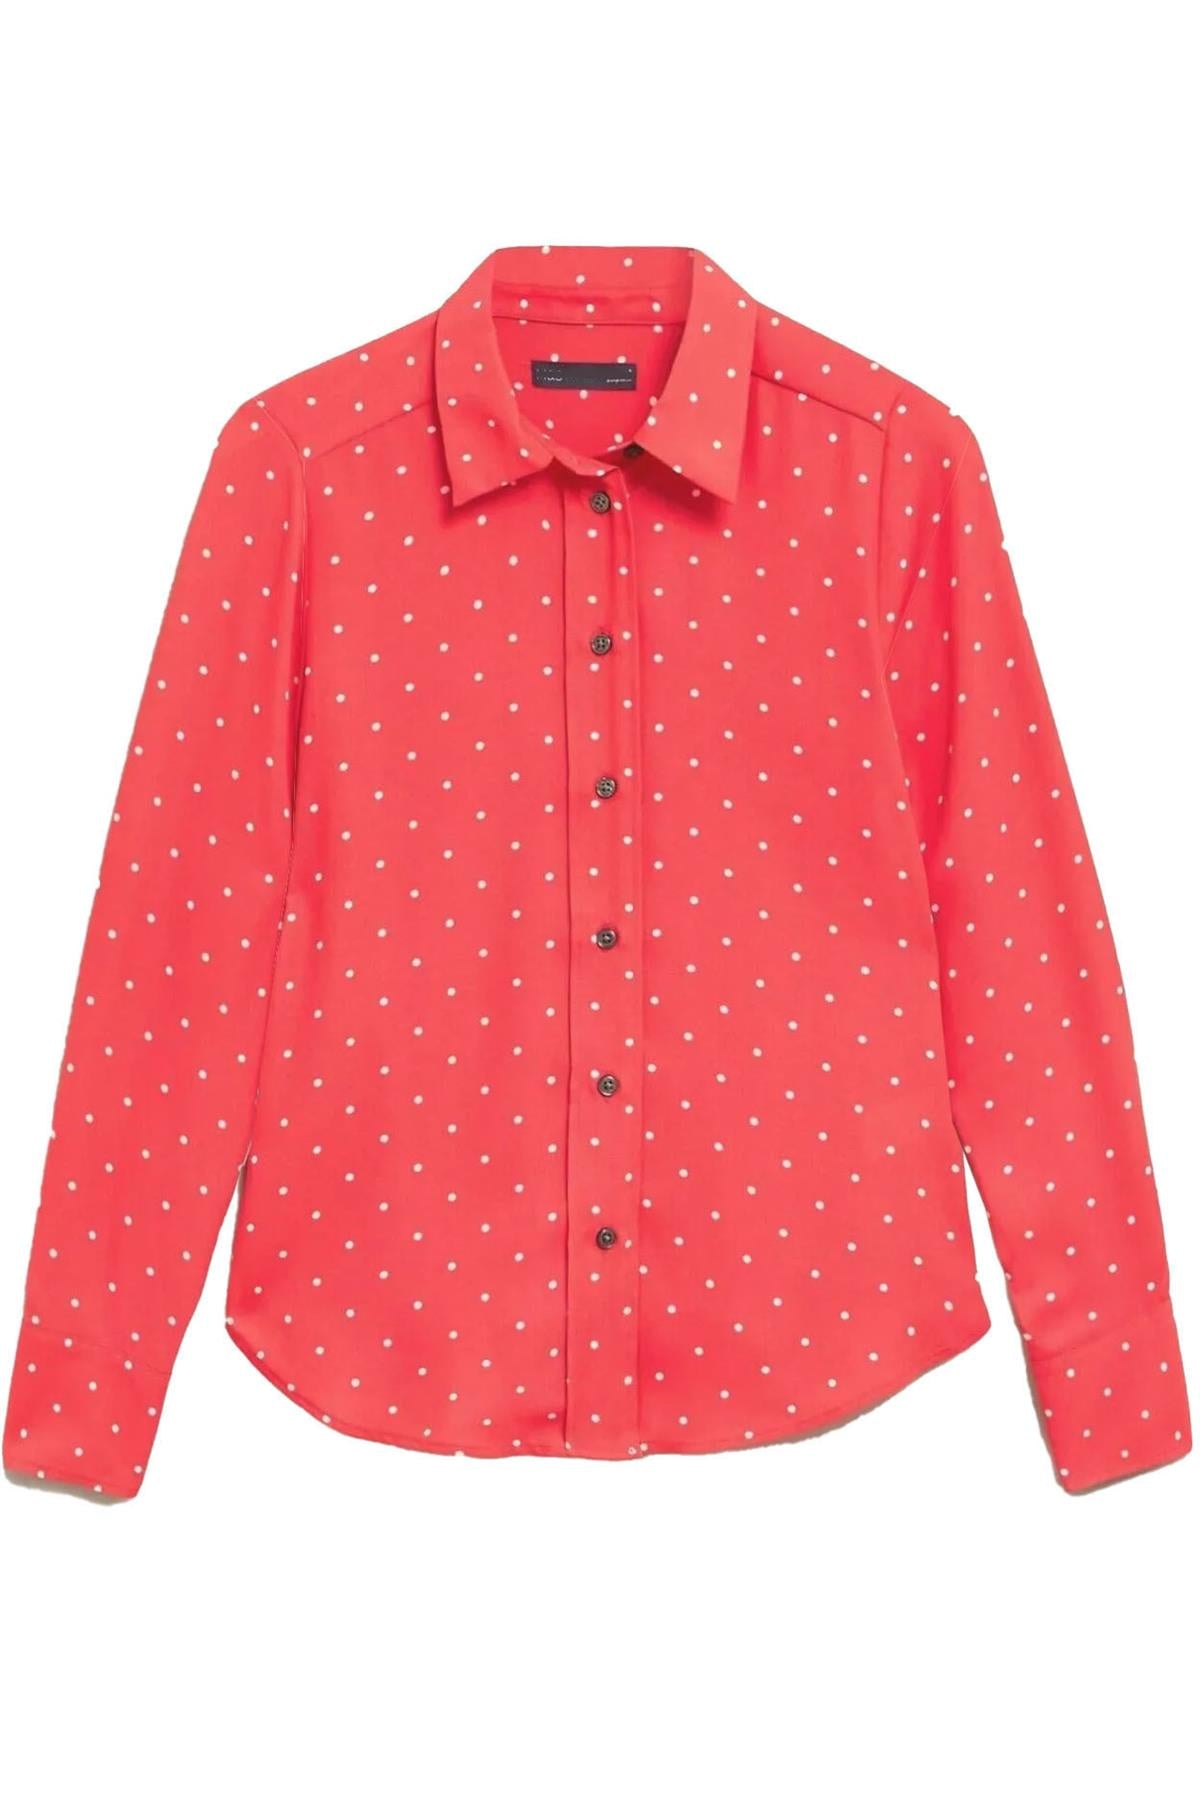 Coral Pink Polka Dot Shirt